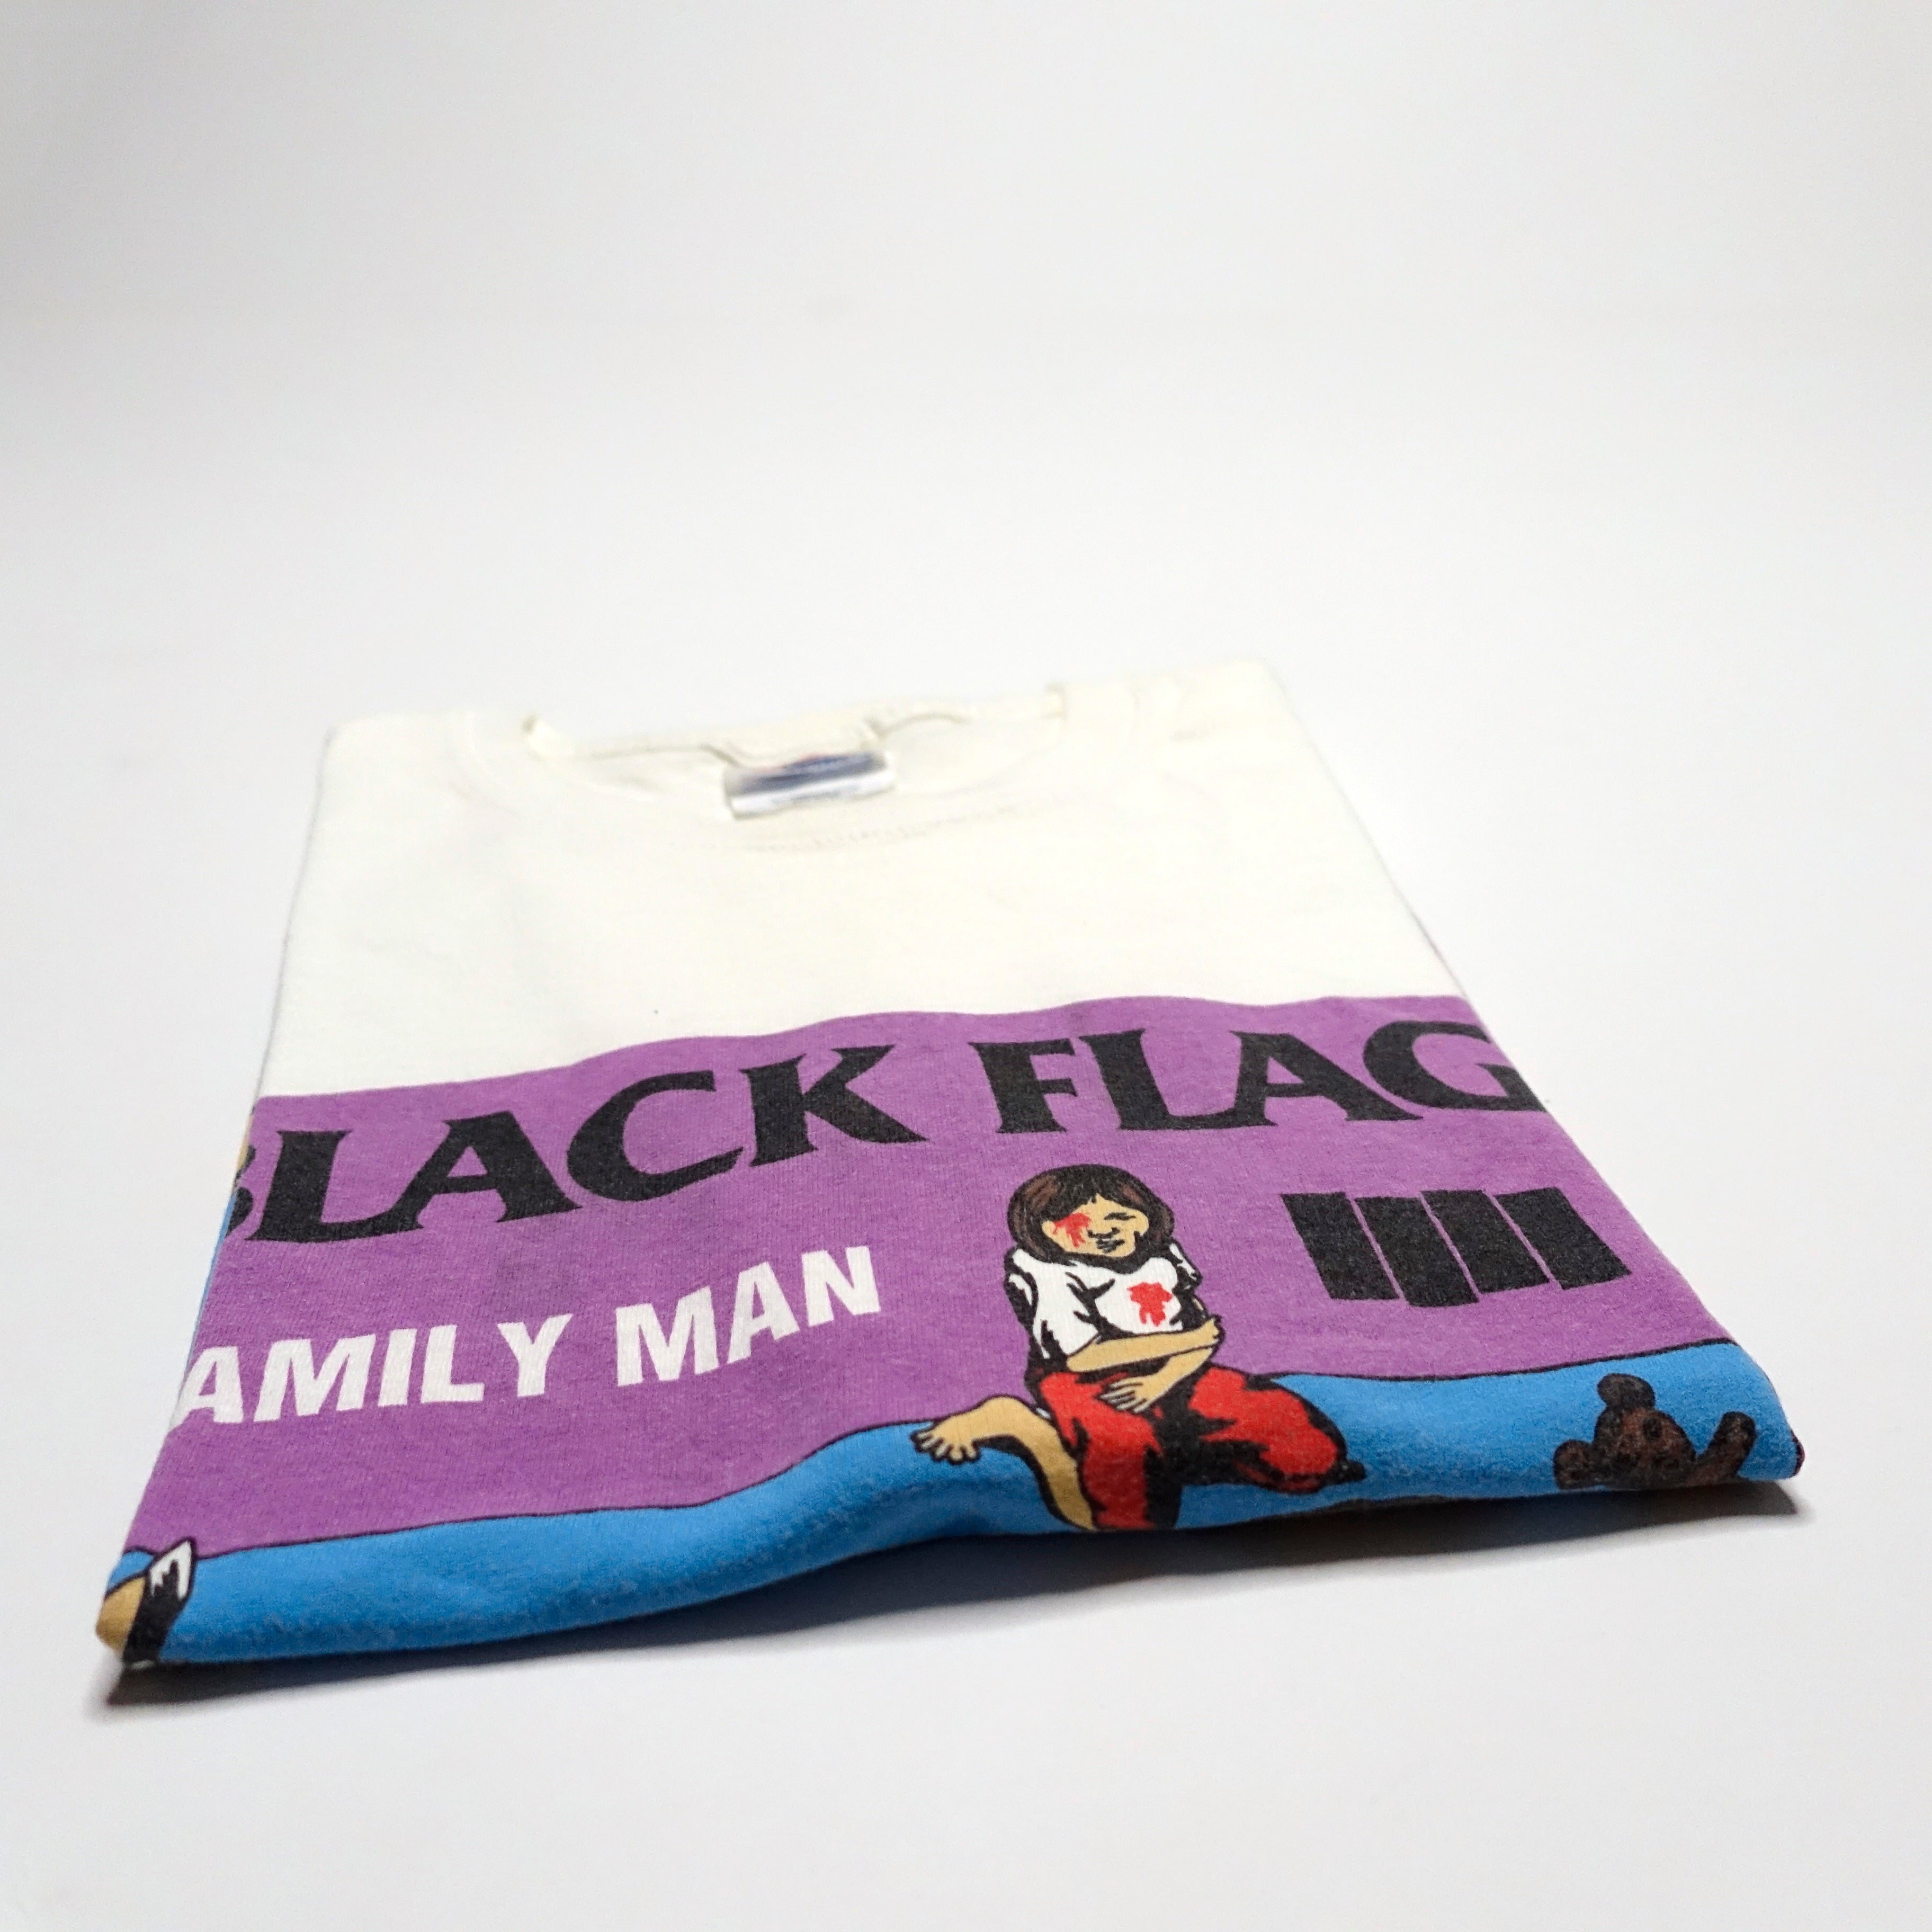 Black Flag - Family Man Tour Shirt Size Large